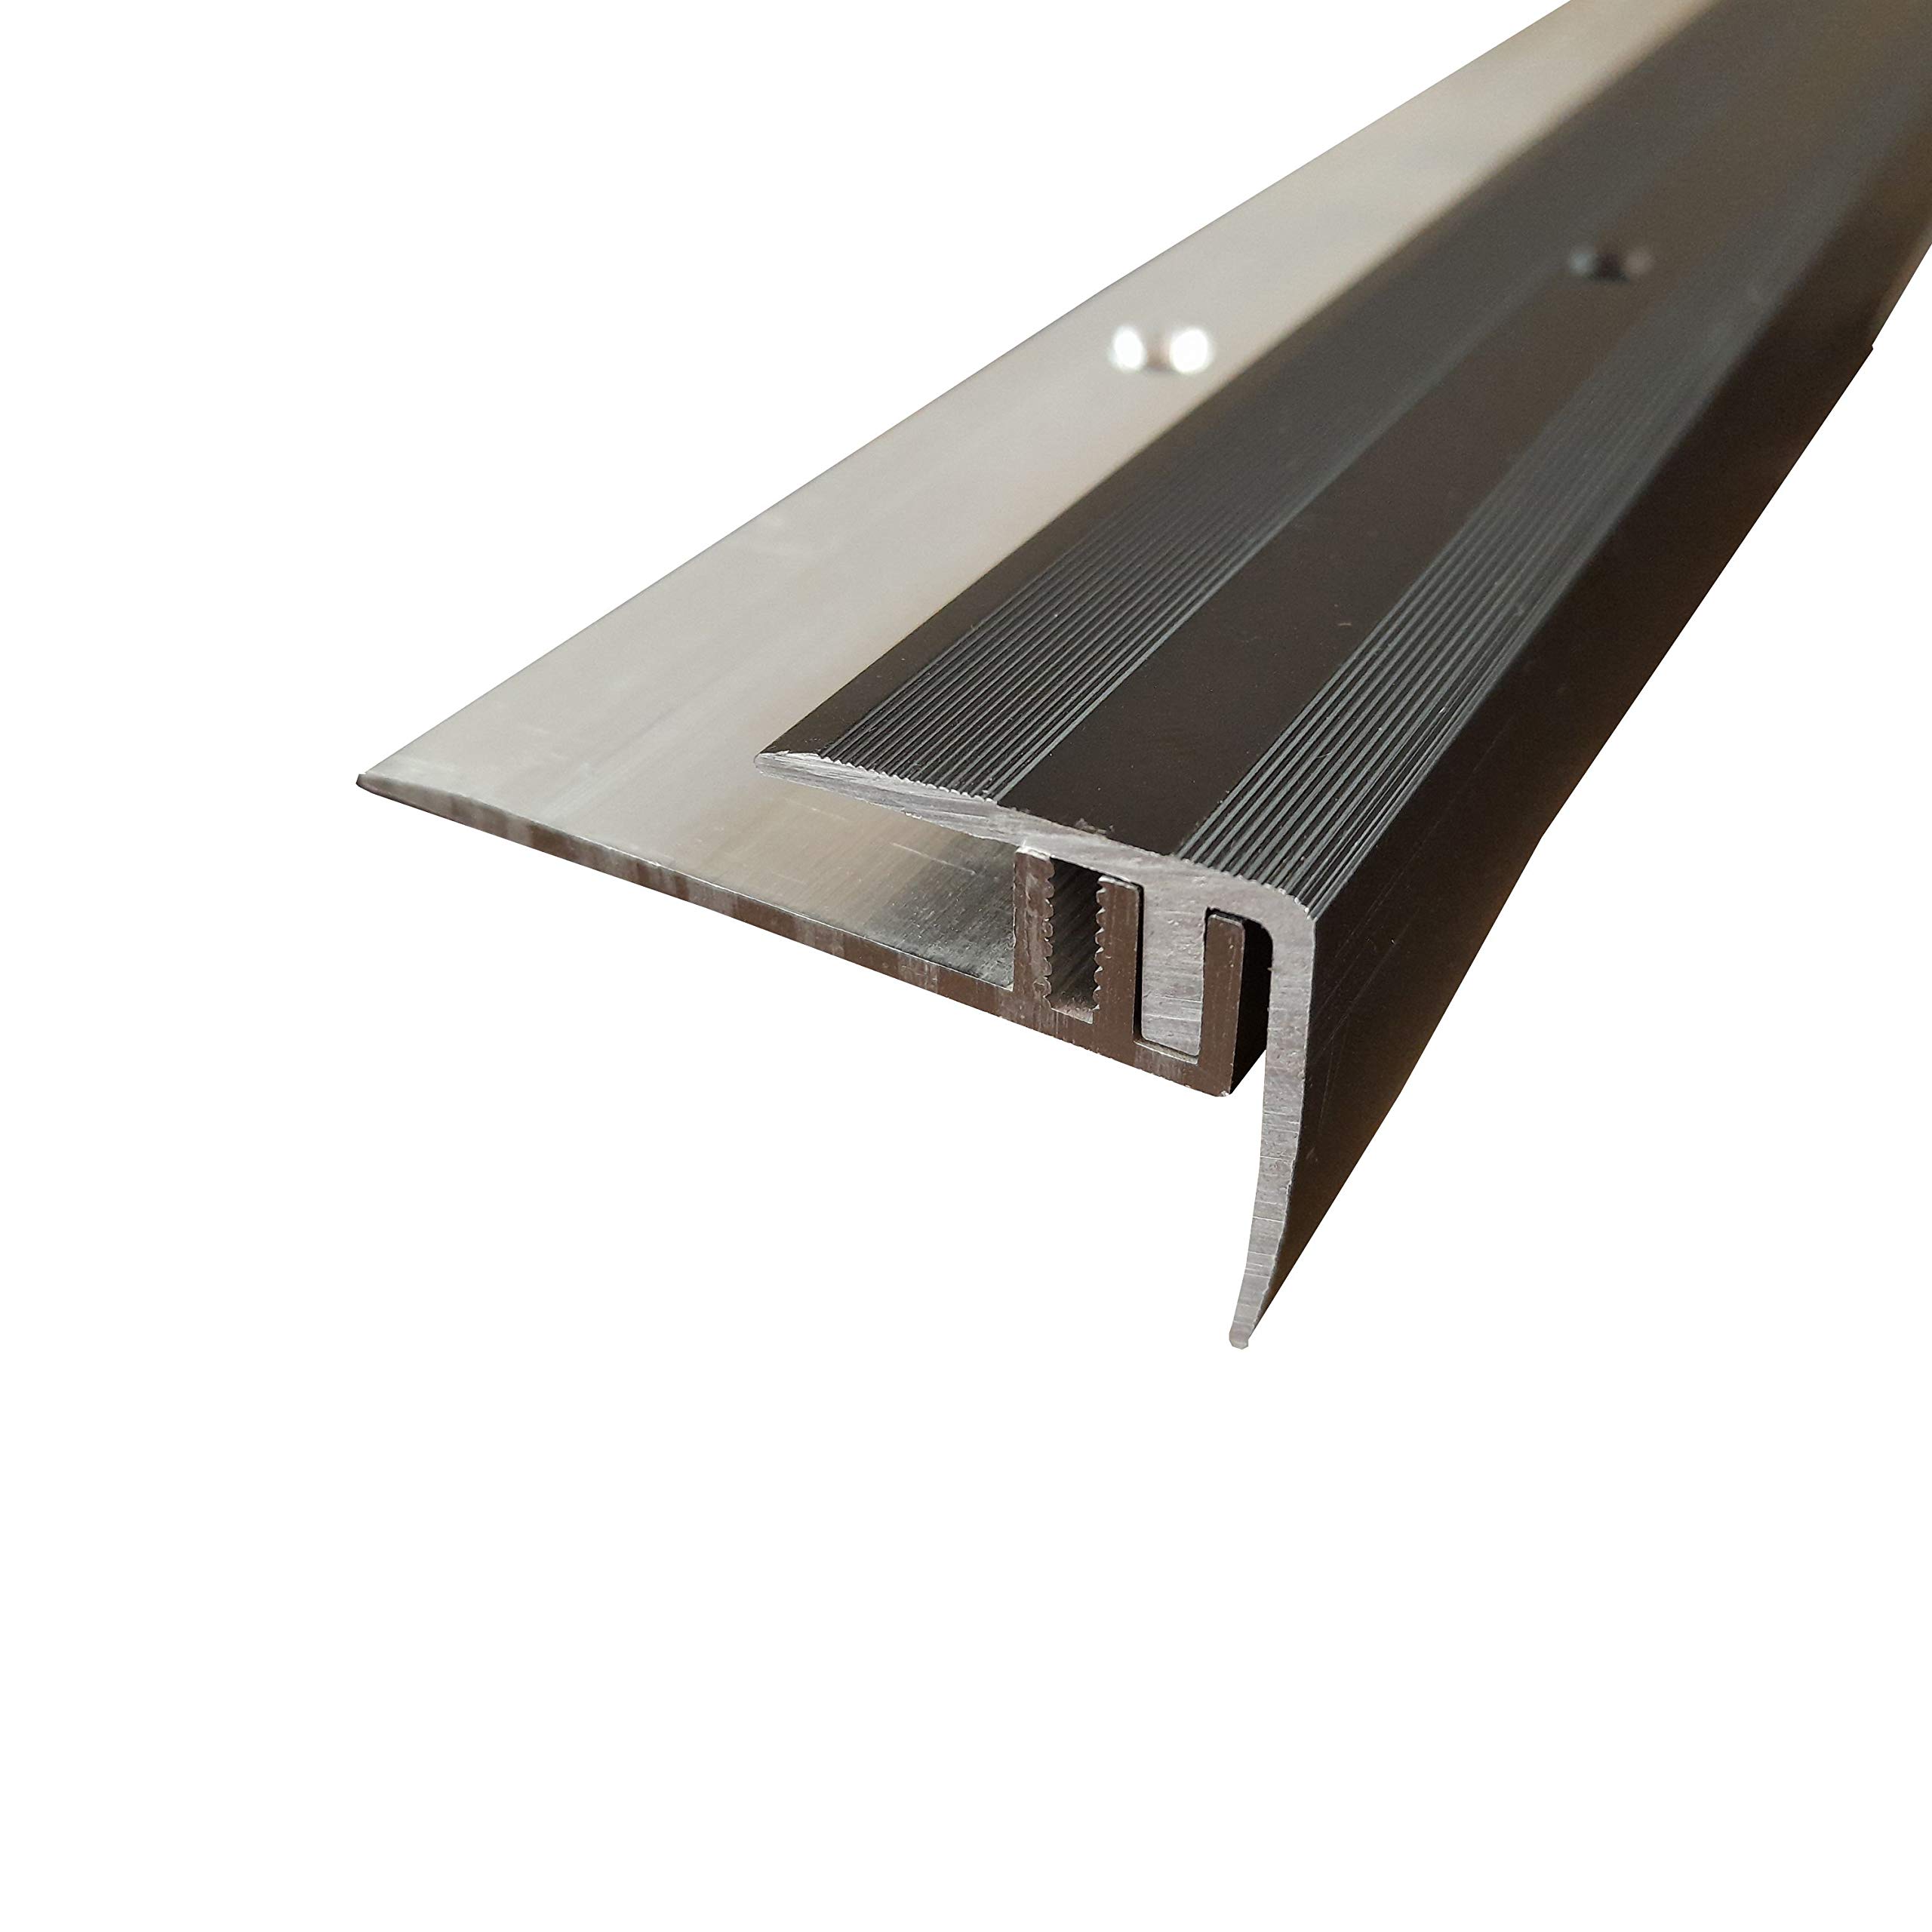 ufitec Profilsystem für Parkett- und Laminatböden - für Belagshöhen von 7-15 mm - viele Farben lieferbar (Treppenkantenprofil, Bronze Dunkel, 100 cm länge)